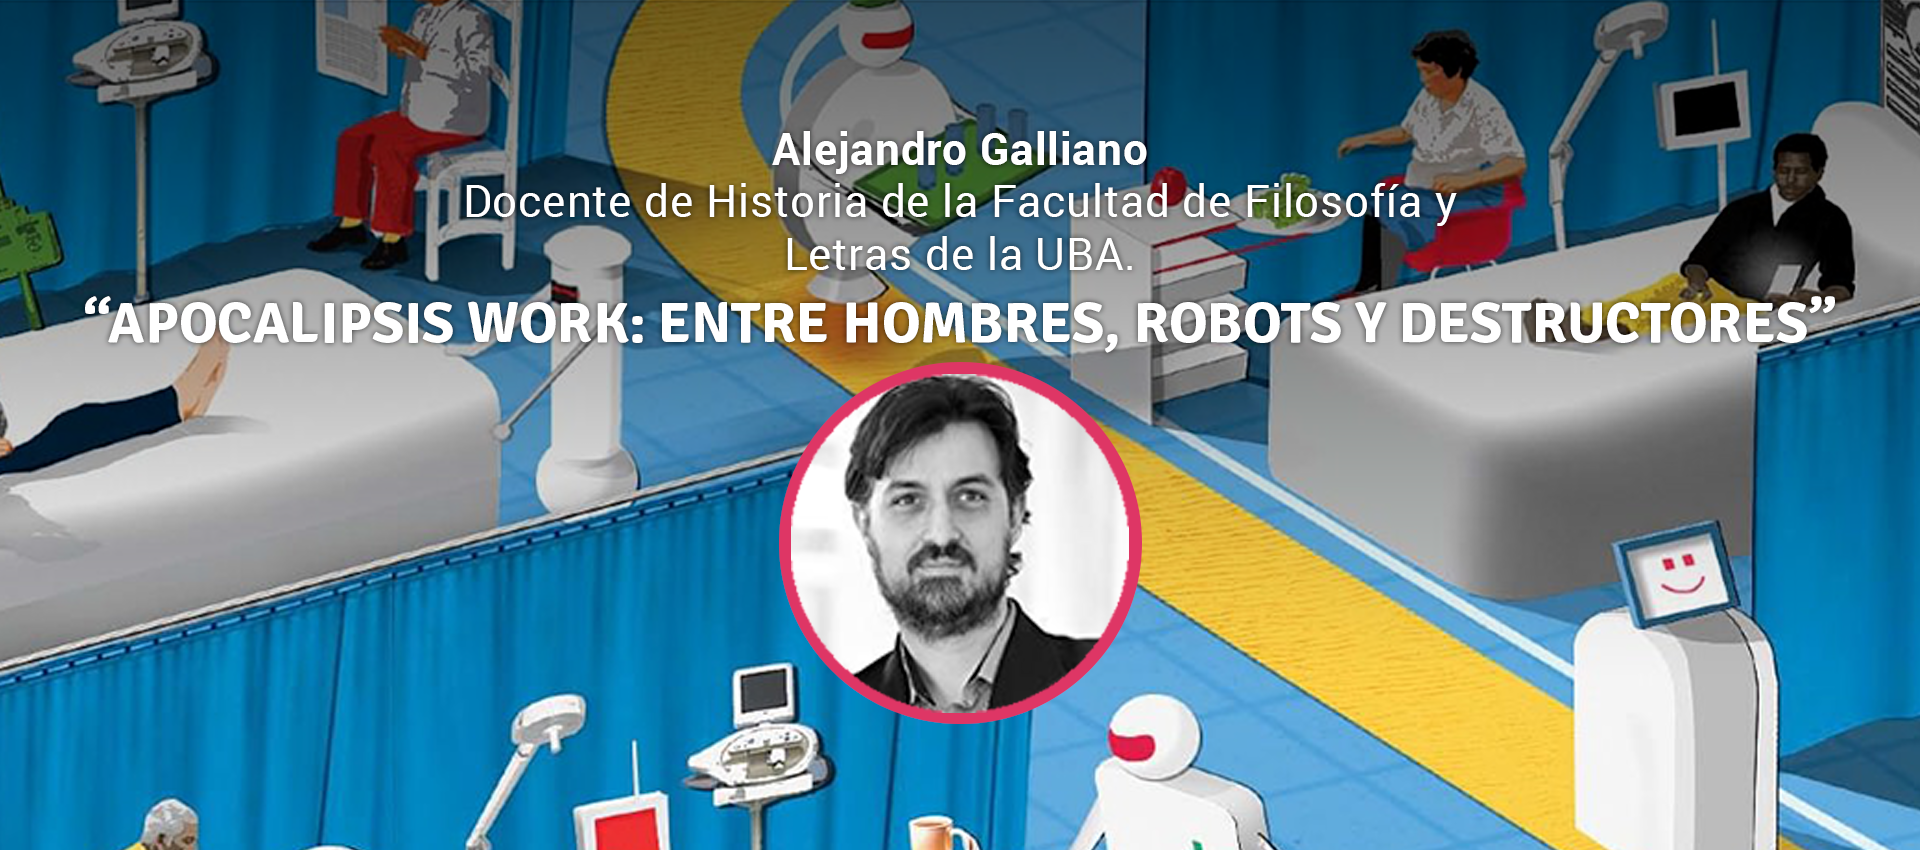 Alejandro Galliano APOCALIPSIS WORK: ENTRE HOMBRES, ROBOTS Y DESTRUCTORES